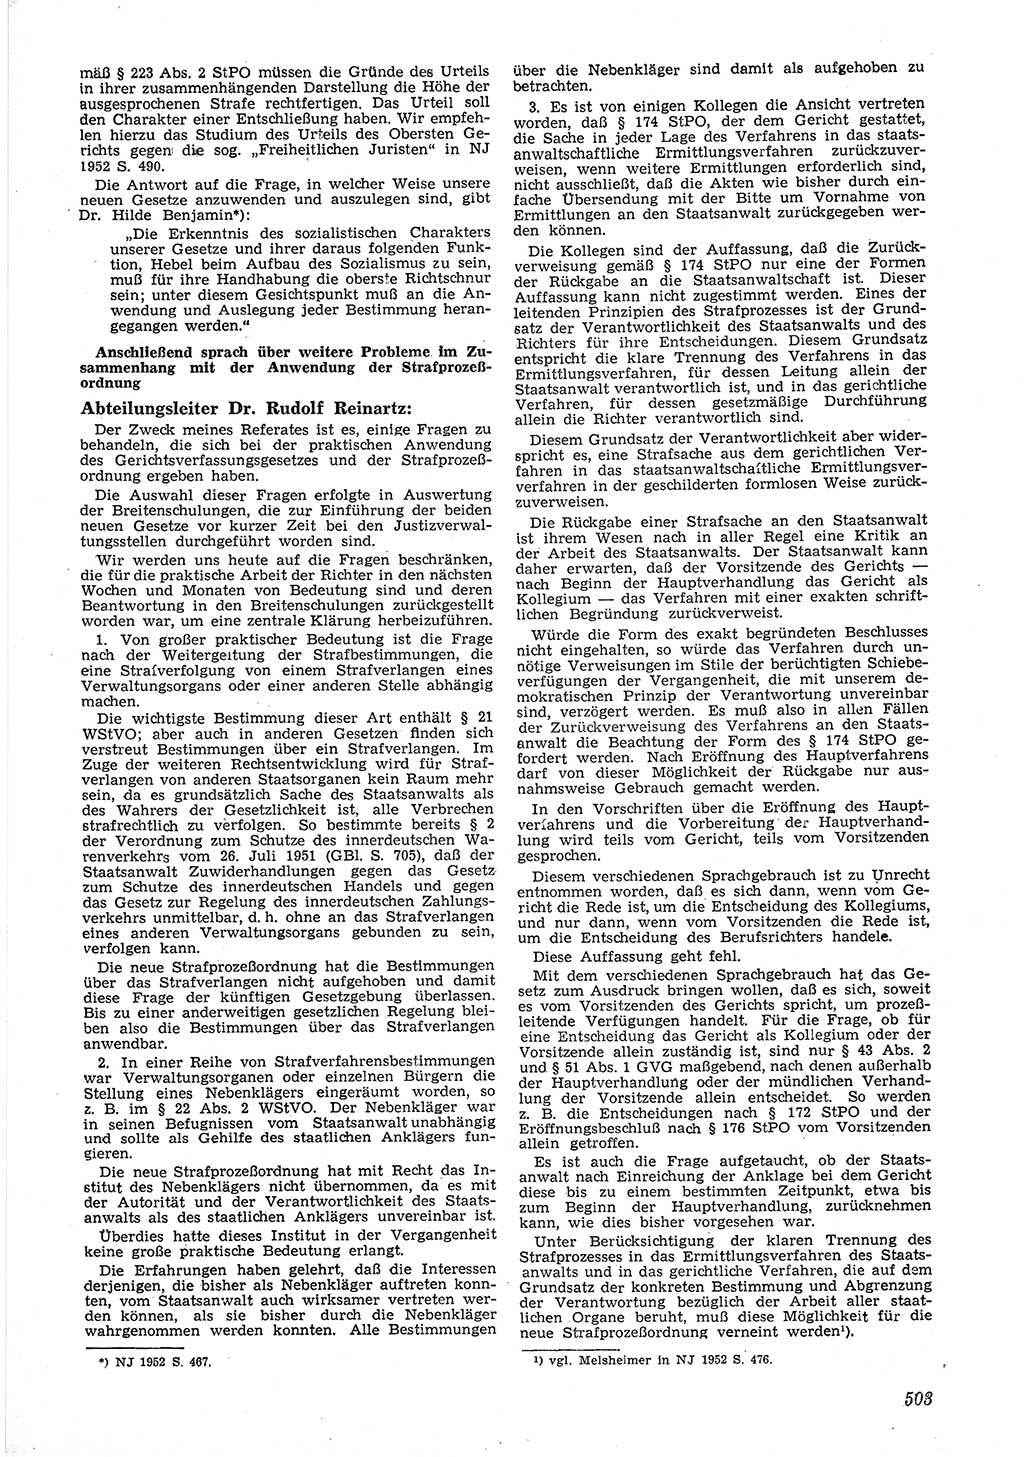 Neue Justiz (NJ), Zeitschrift für Recht und Rechtswissenschaft [Deutsche Demokratische Republik (DDR)], 6. Jahrgang 1952, Seite 503 (NJ DDR 1952, S. 503)